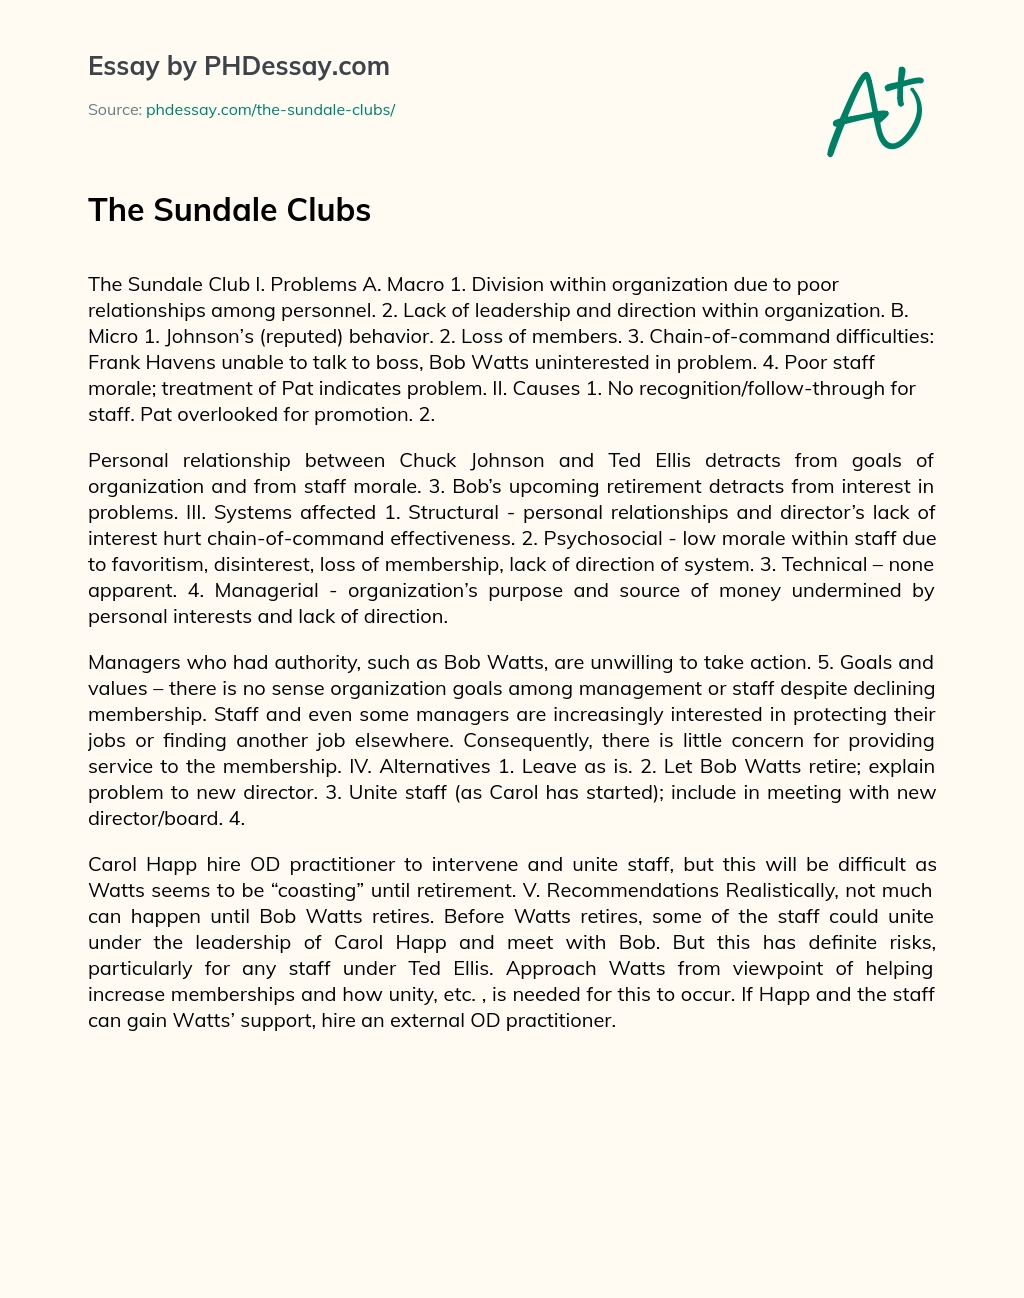 The Sundale Clubs essay